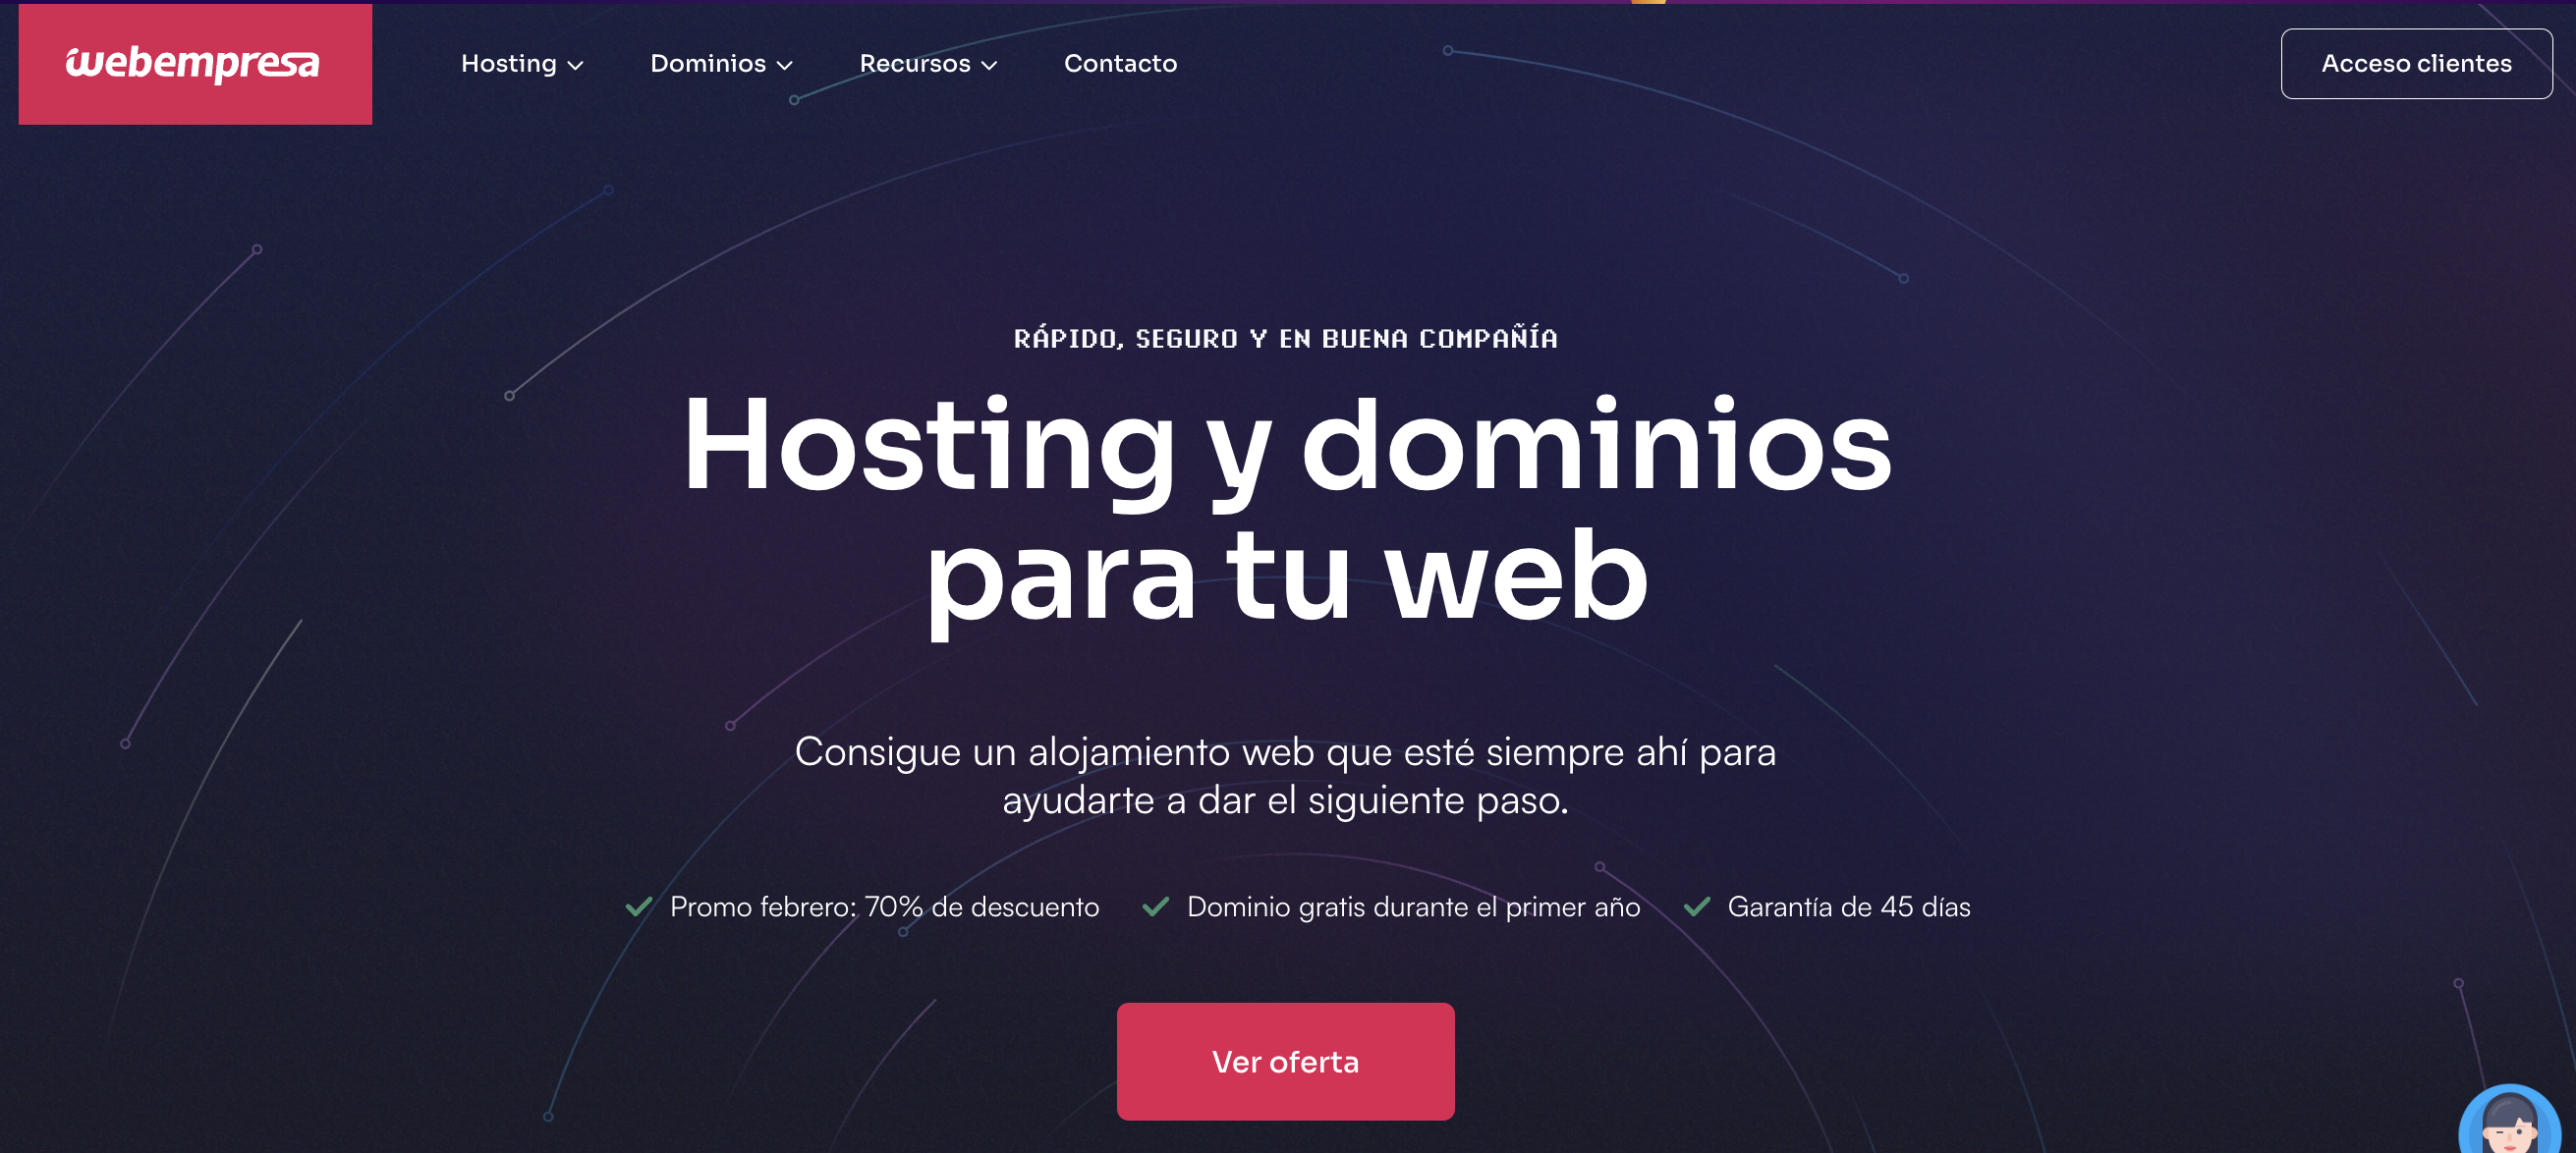 Webempresa hosting